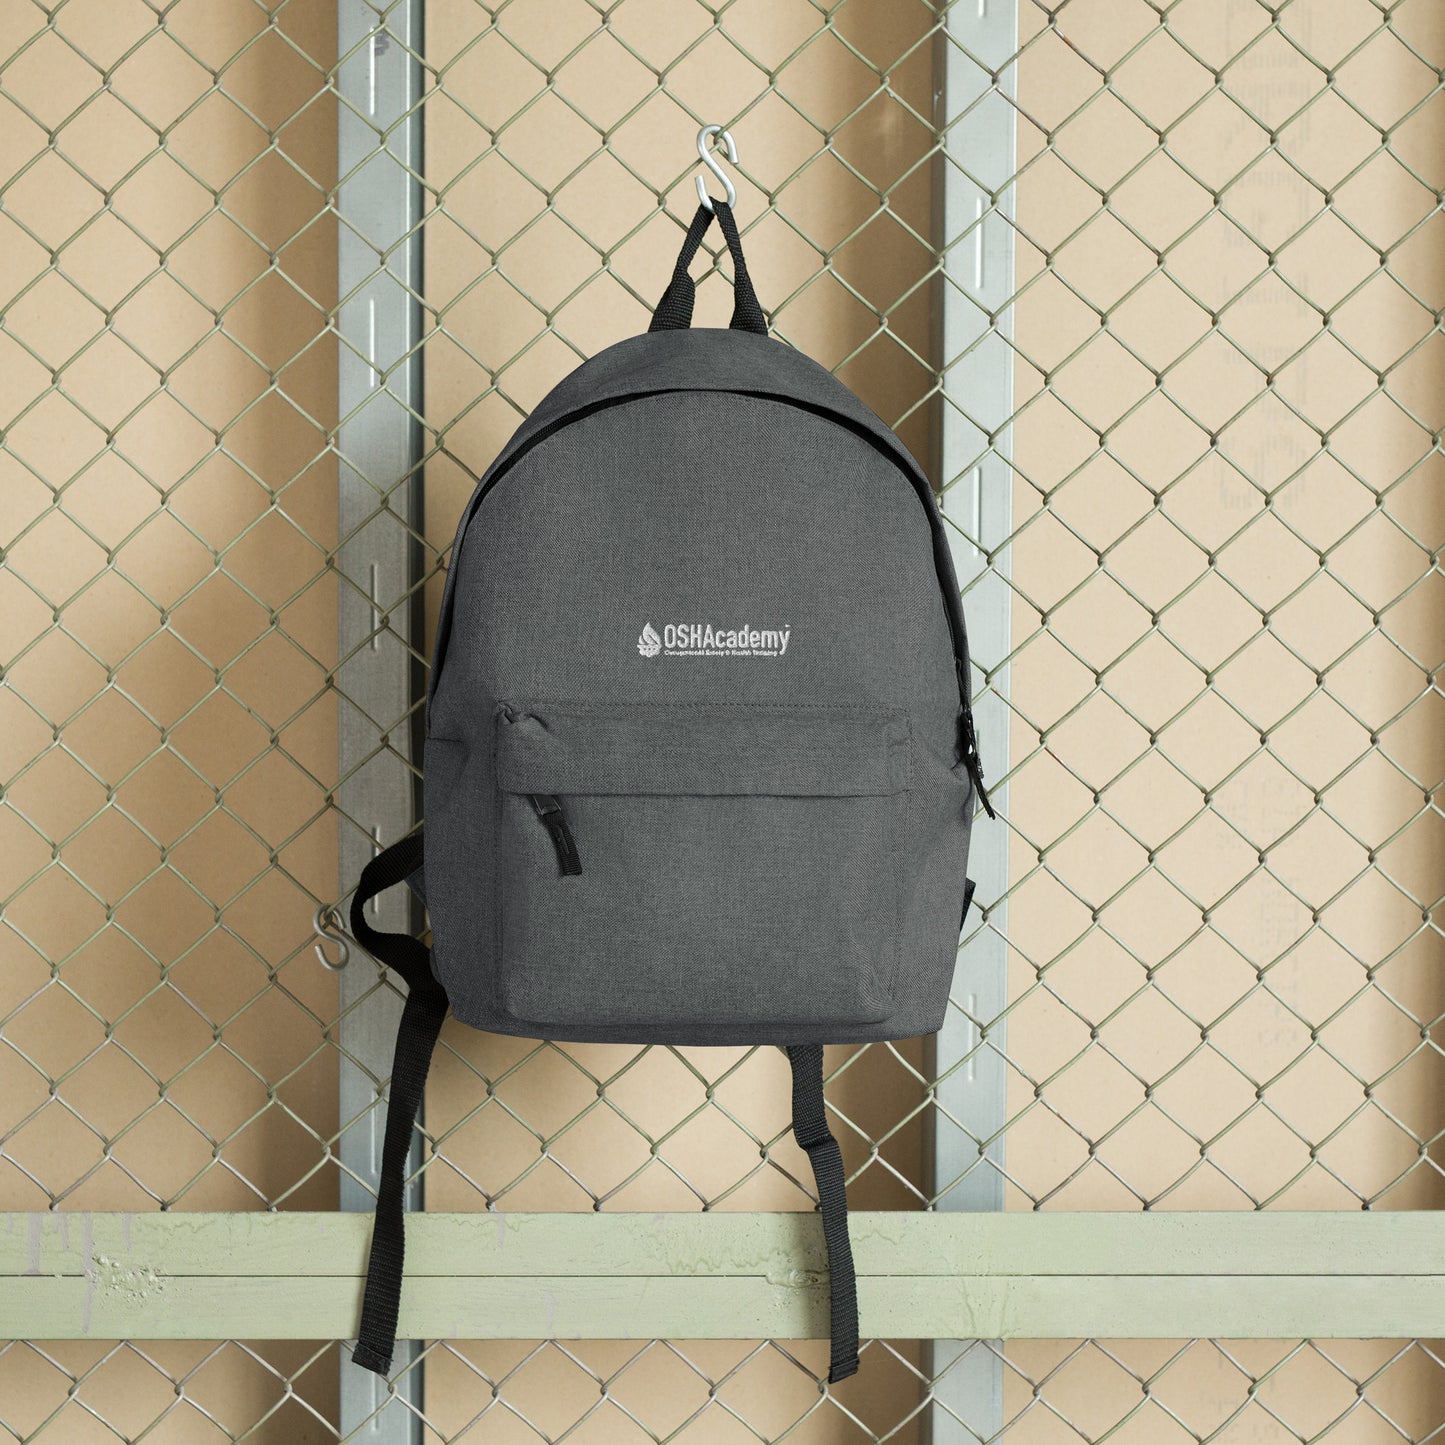 OSHAcademy Backpack